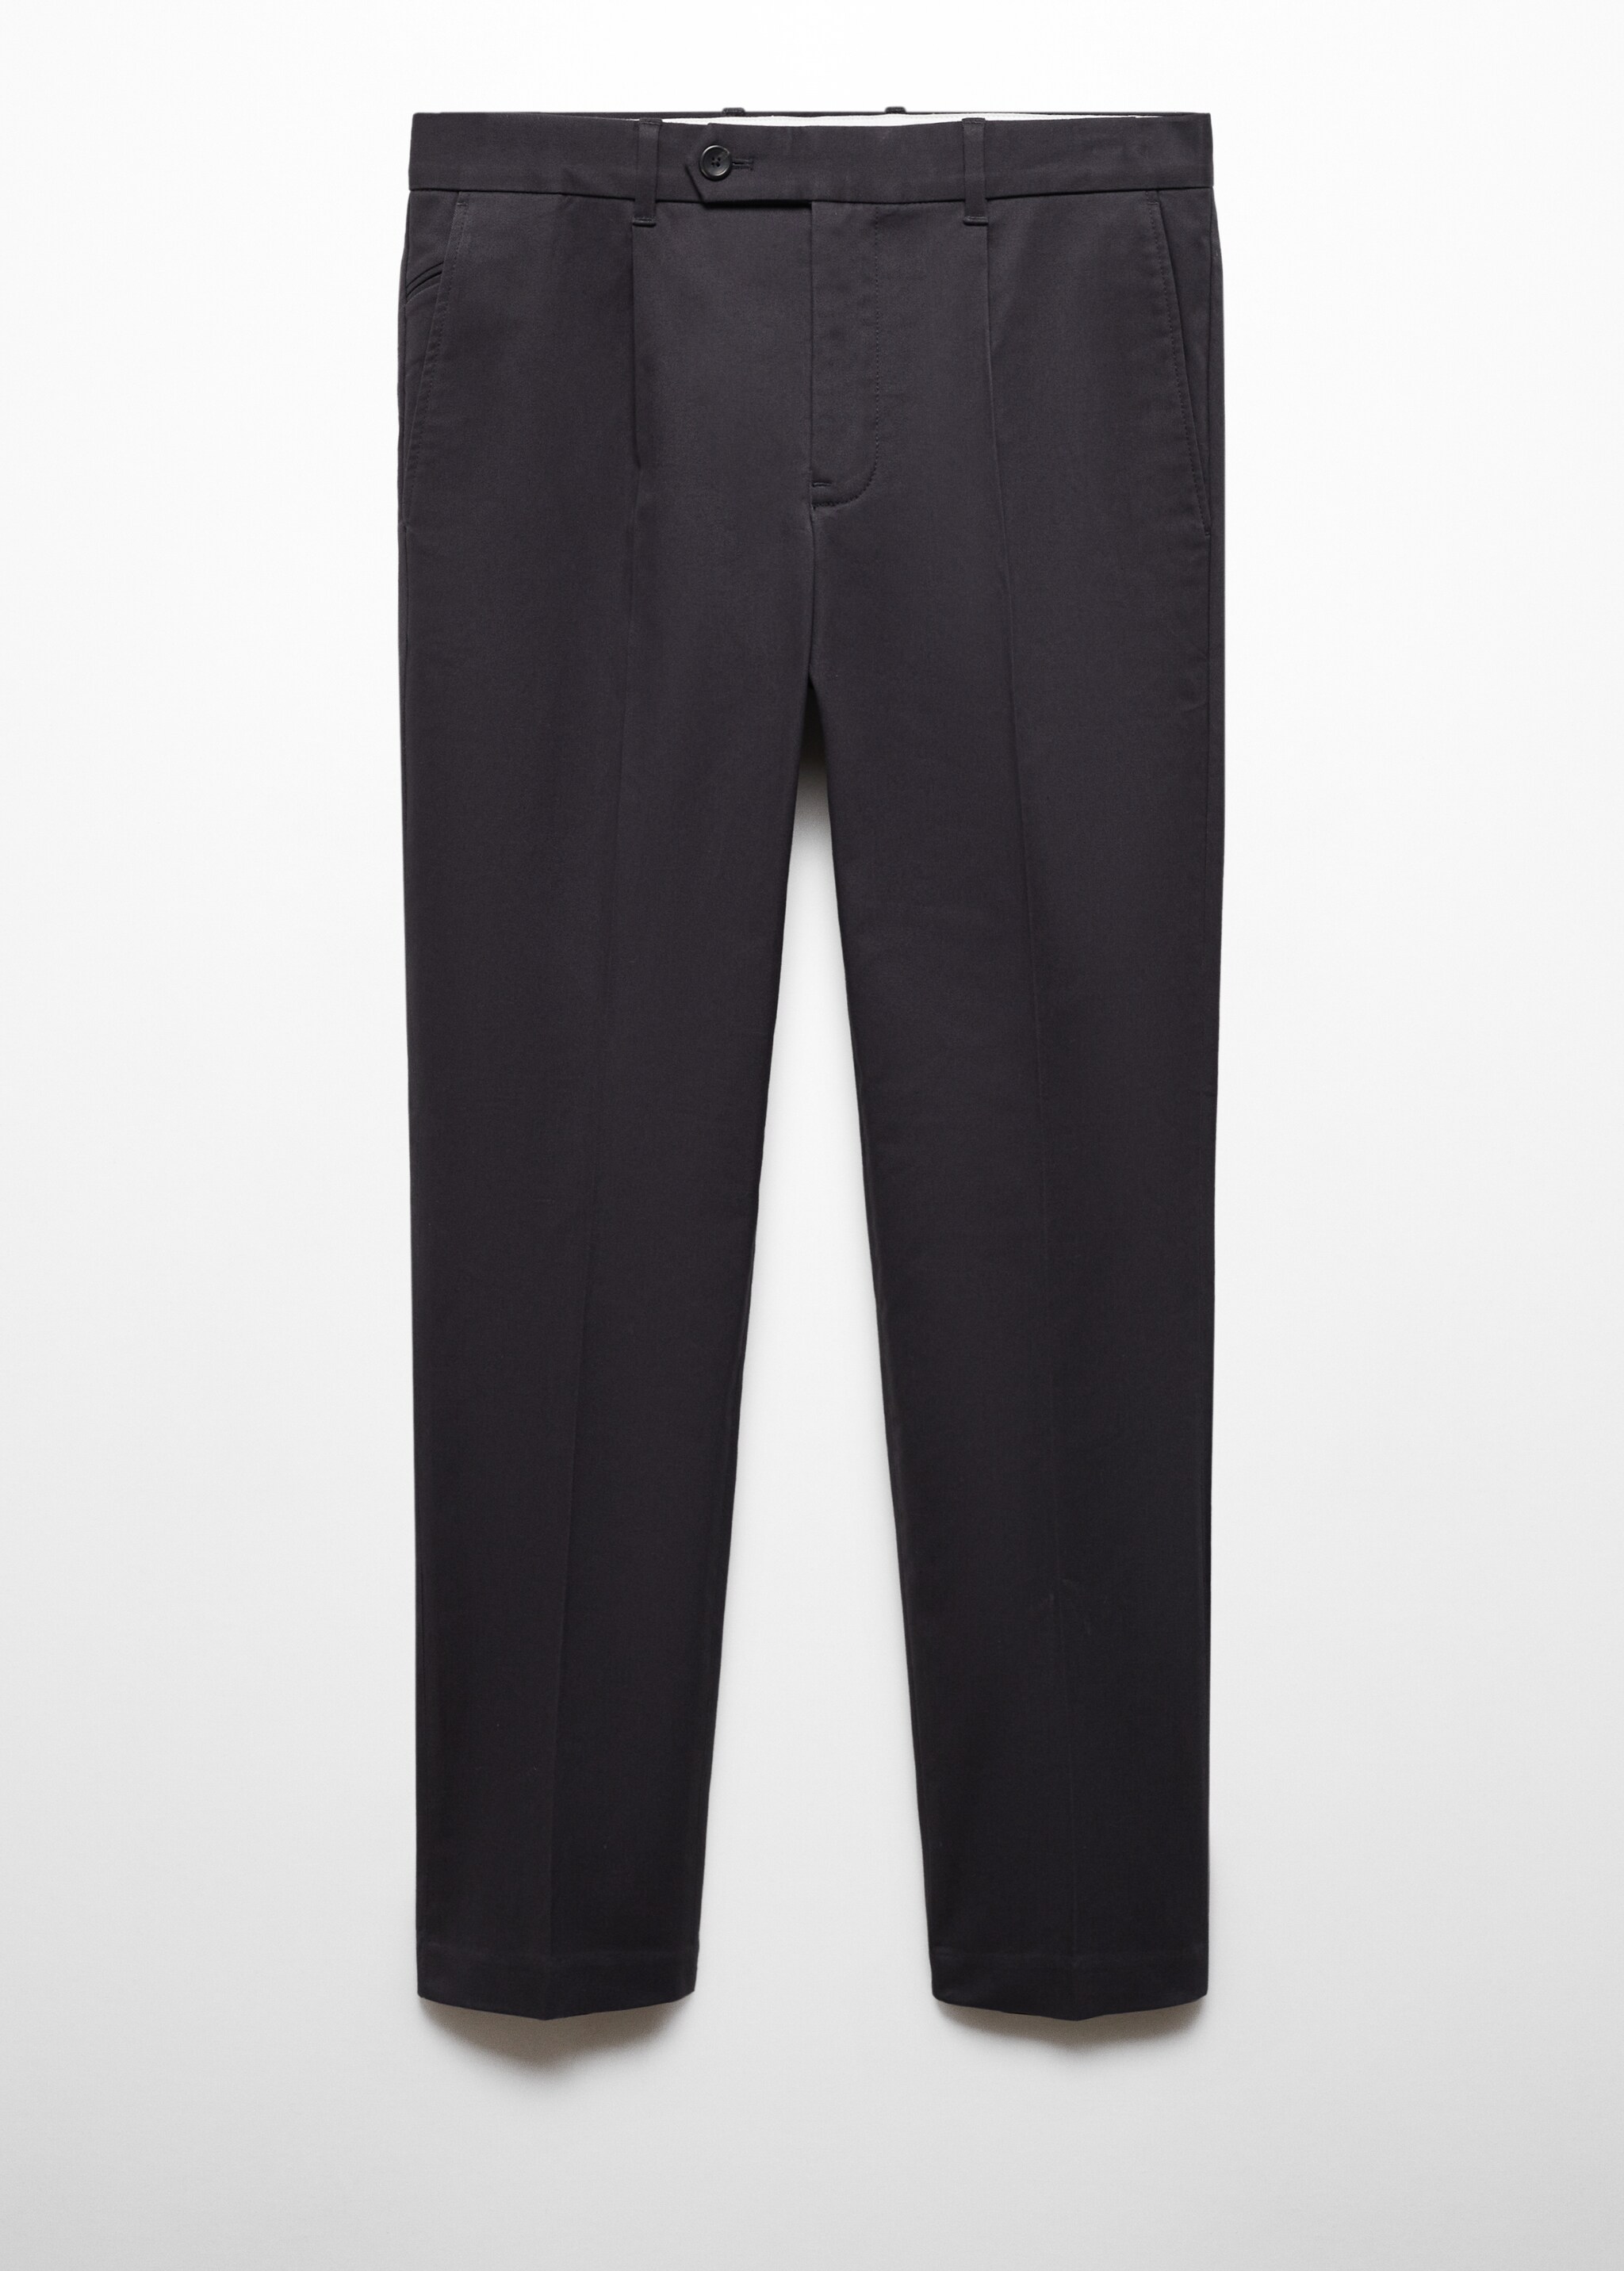 Pantaloni cotone slim-fit pinces - Articolo senza modello